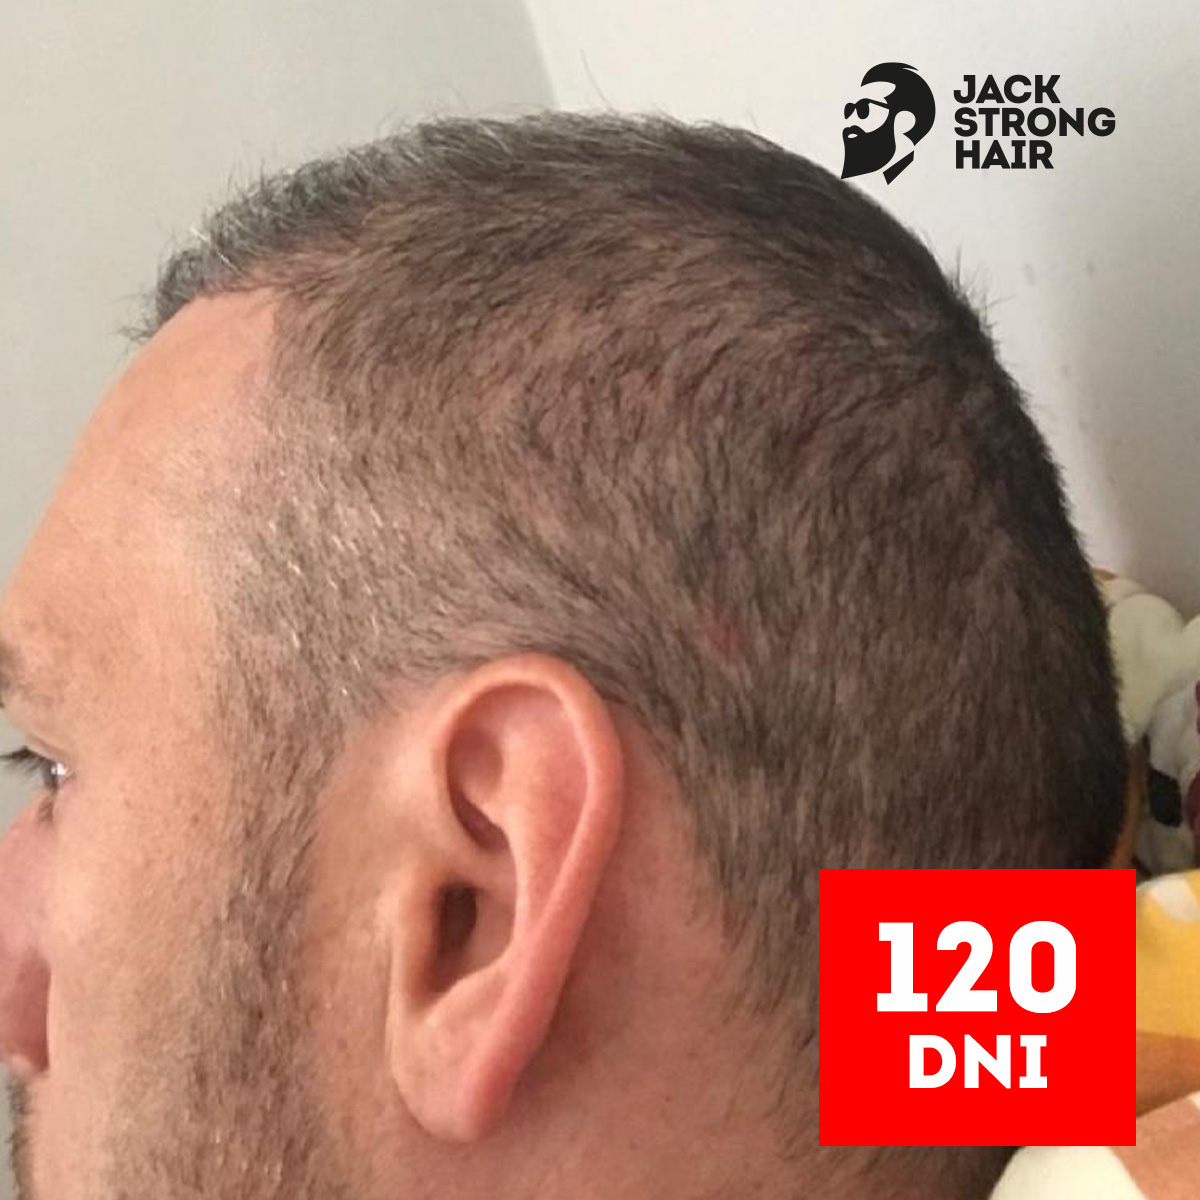 zdjęcie efektu zabiegu przeszczepu włosów po 120 dniach